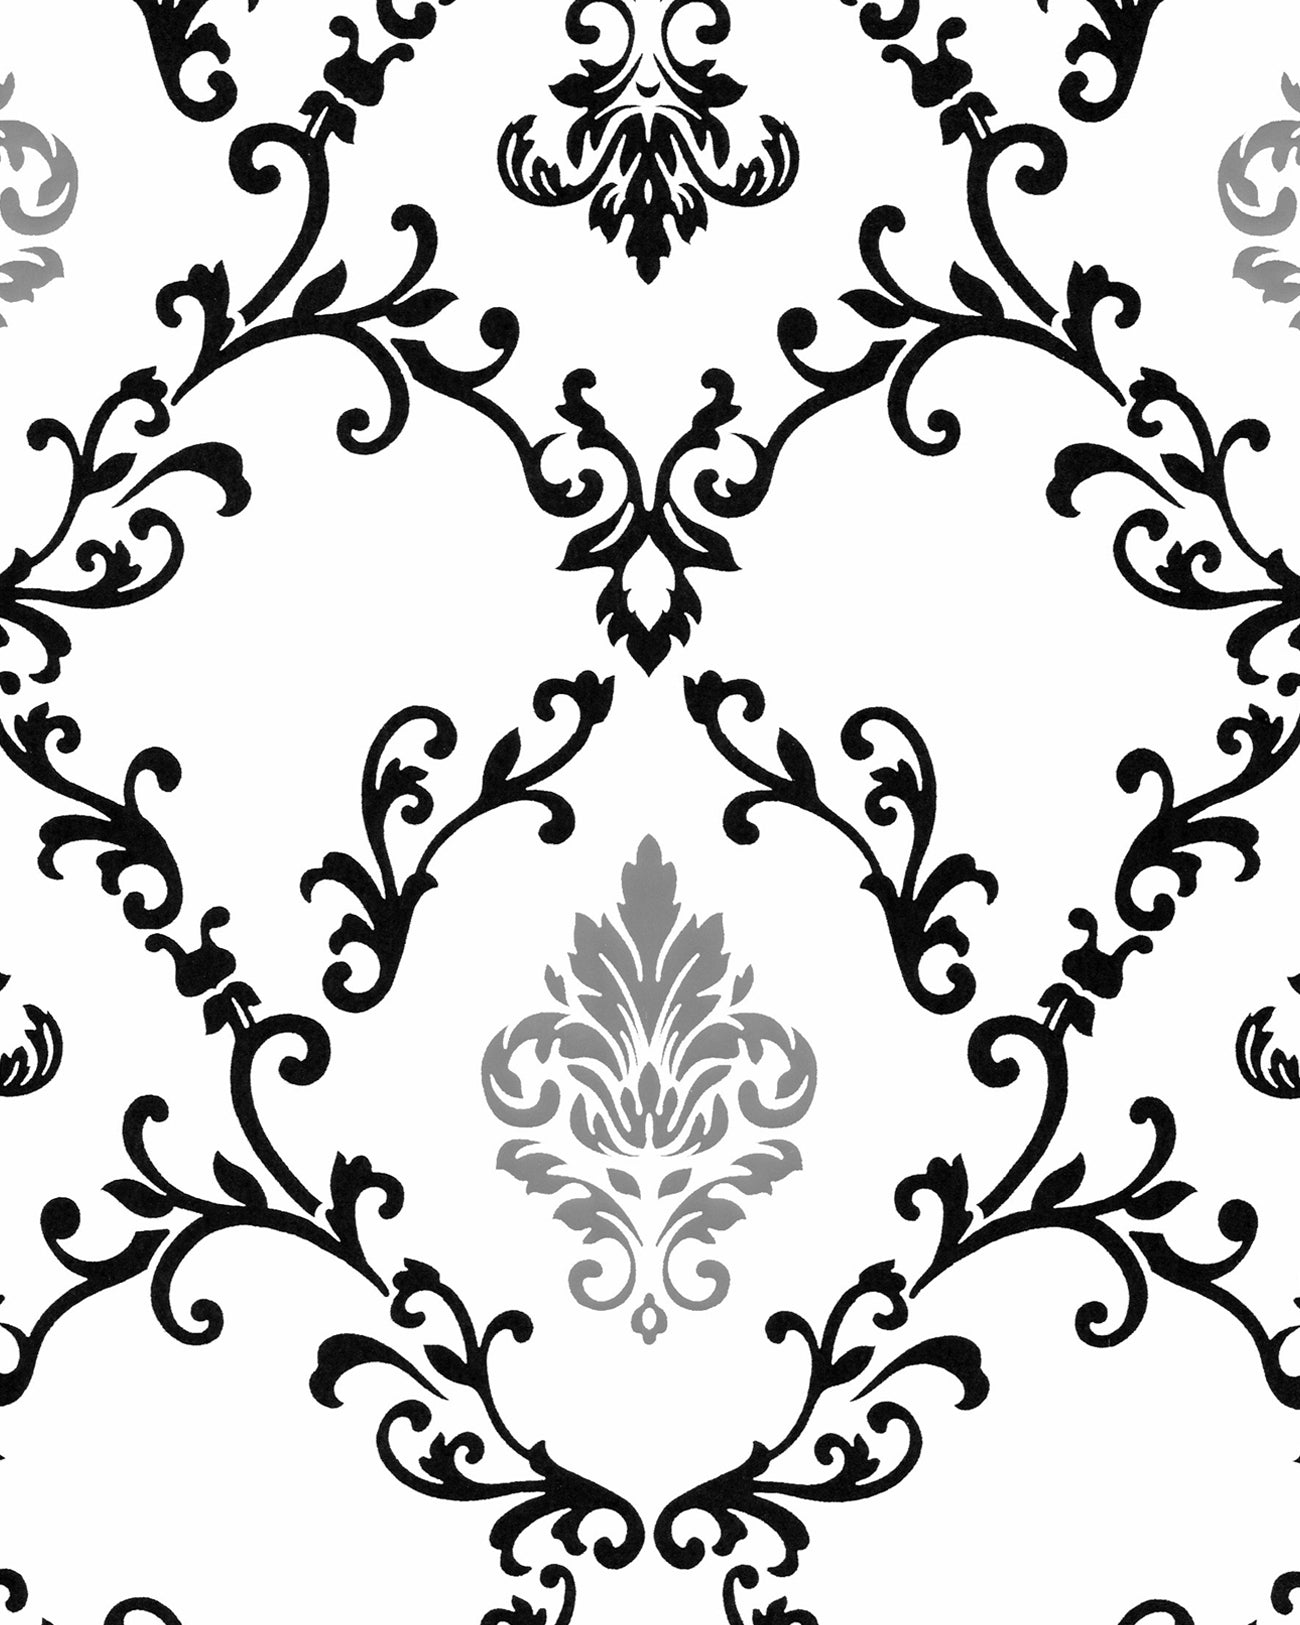 Papier peint baroque EDEM 85026BR20 papier peint vinyle lisse avec des ornements et des accents métalliques blanc noir argent 5,33 m2